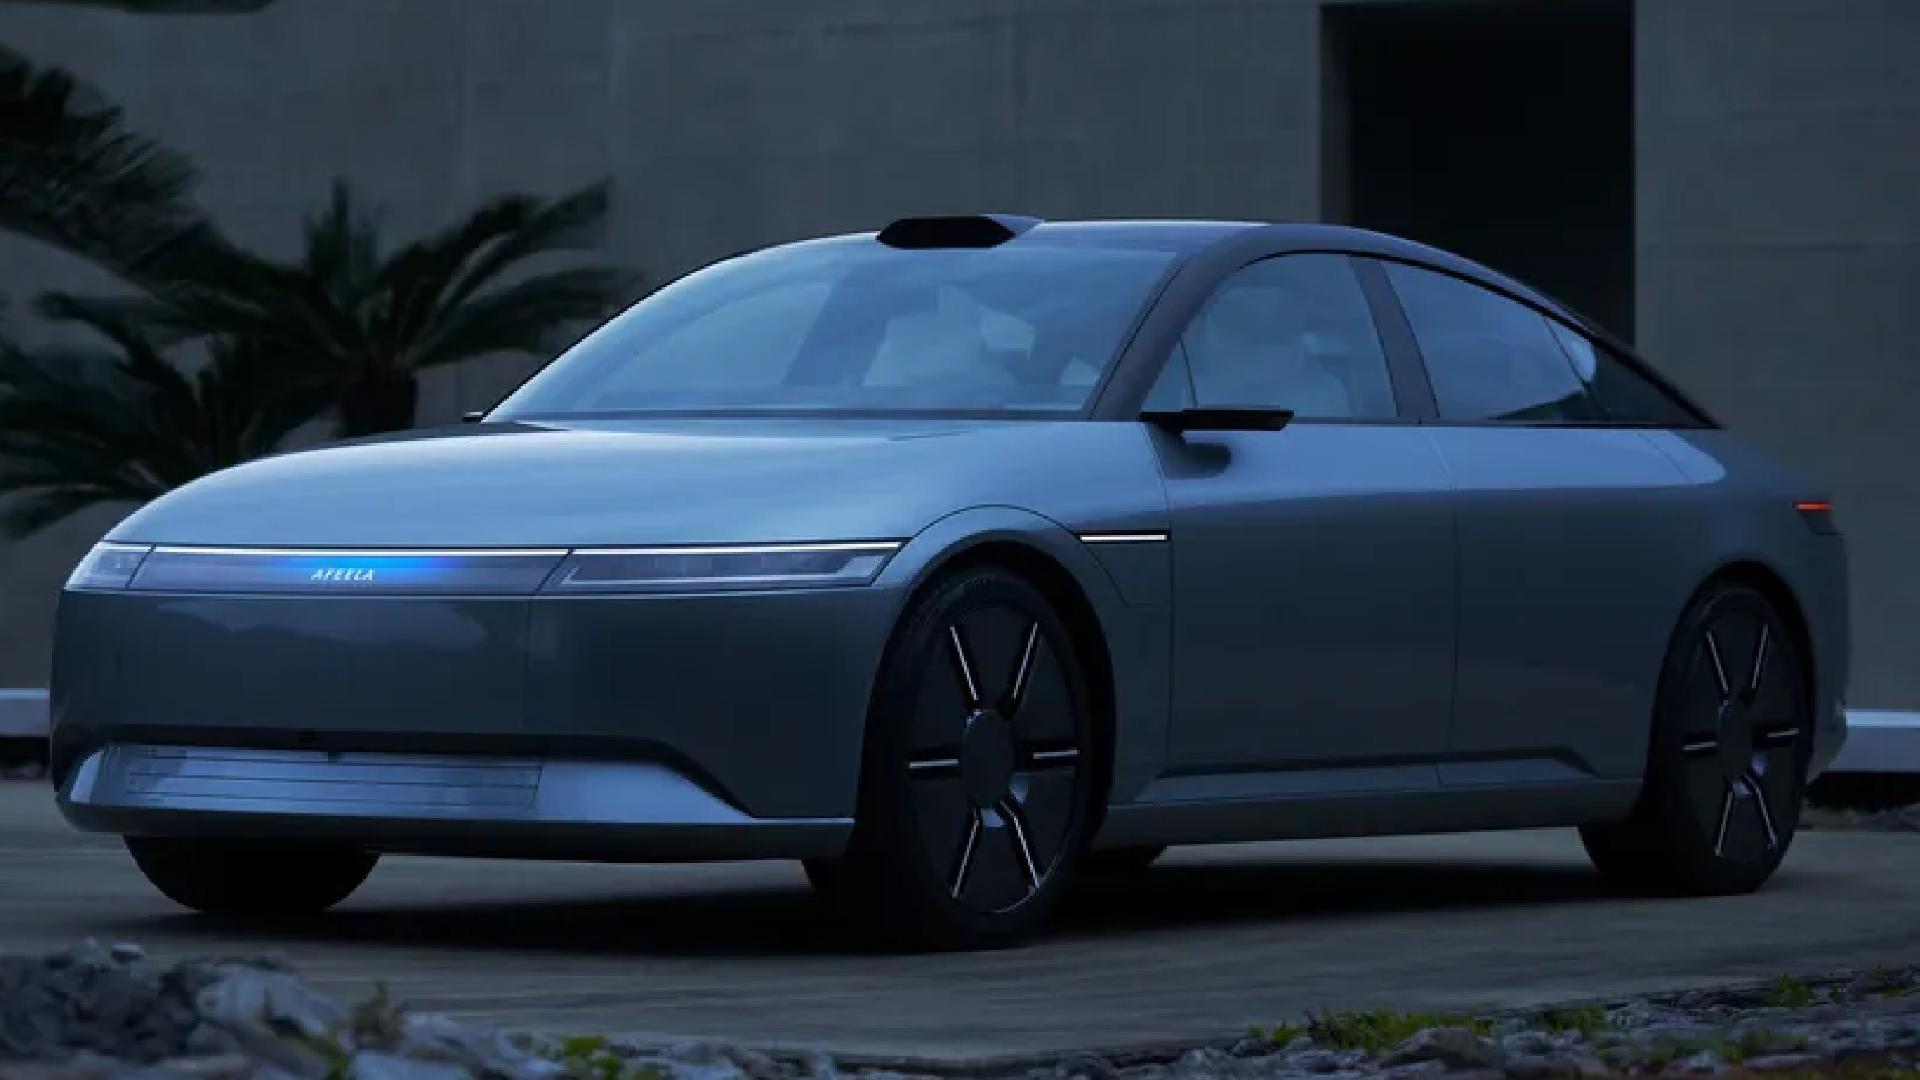 Melhor que o PS5: Volvo usa tecnologia de games para desenvolver carros  autônomos - Motor Show